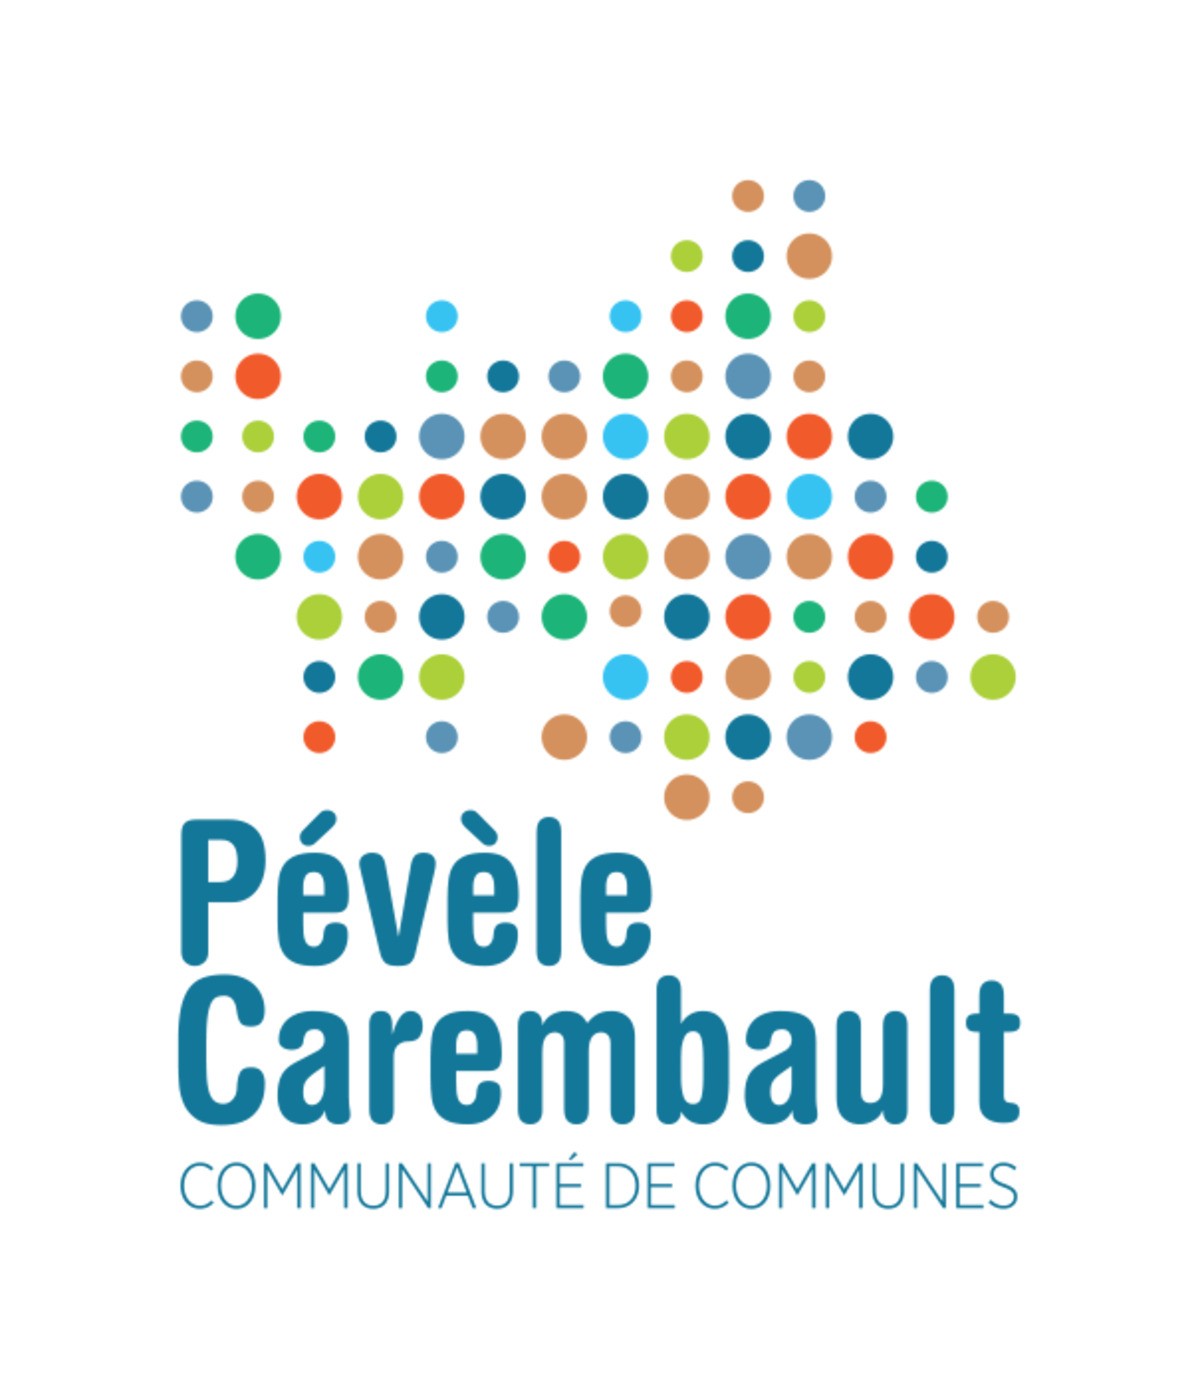 Pévèle Carembault - Ensemble Pour La Planète 